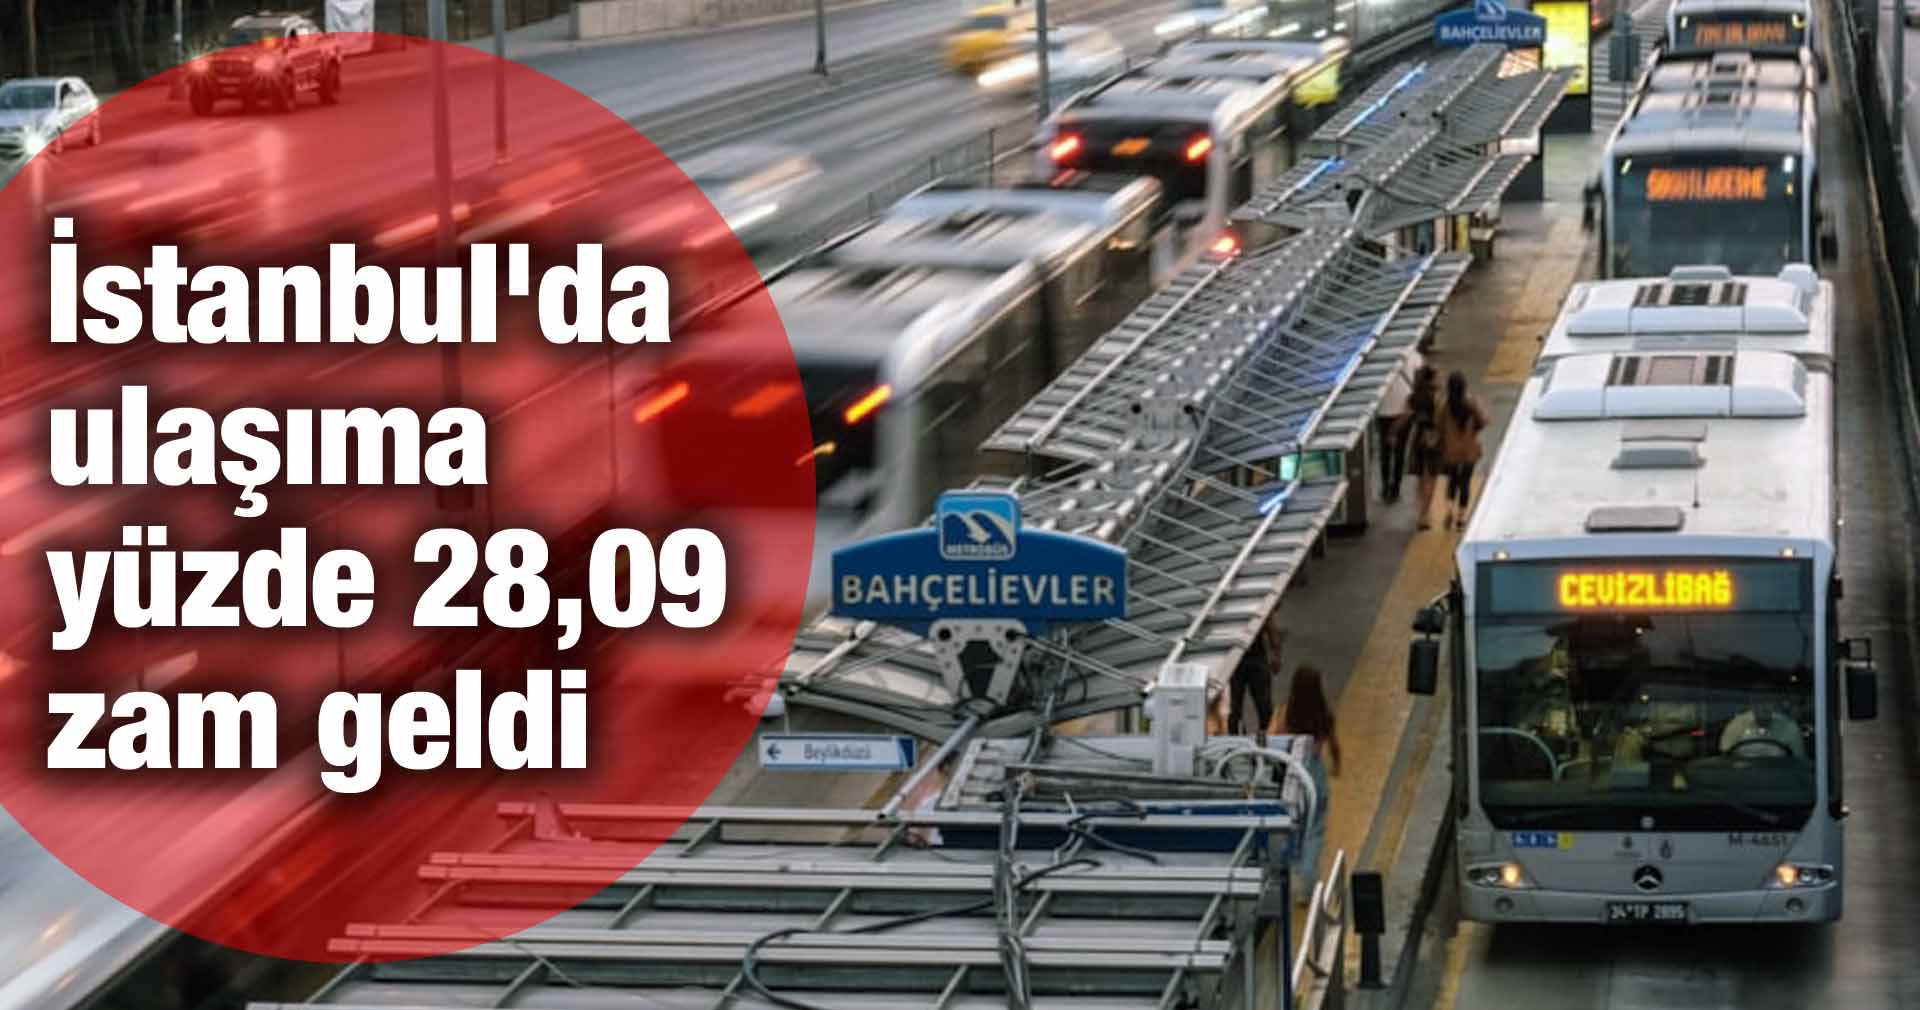 İstanbul’da ulaşıma yüzde 28,09 zam